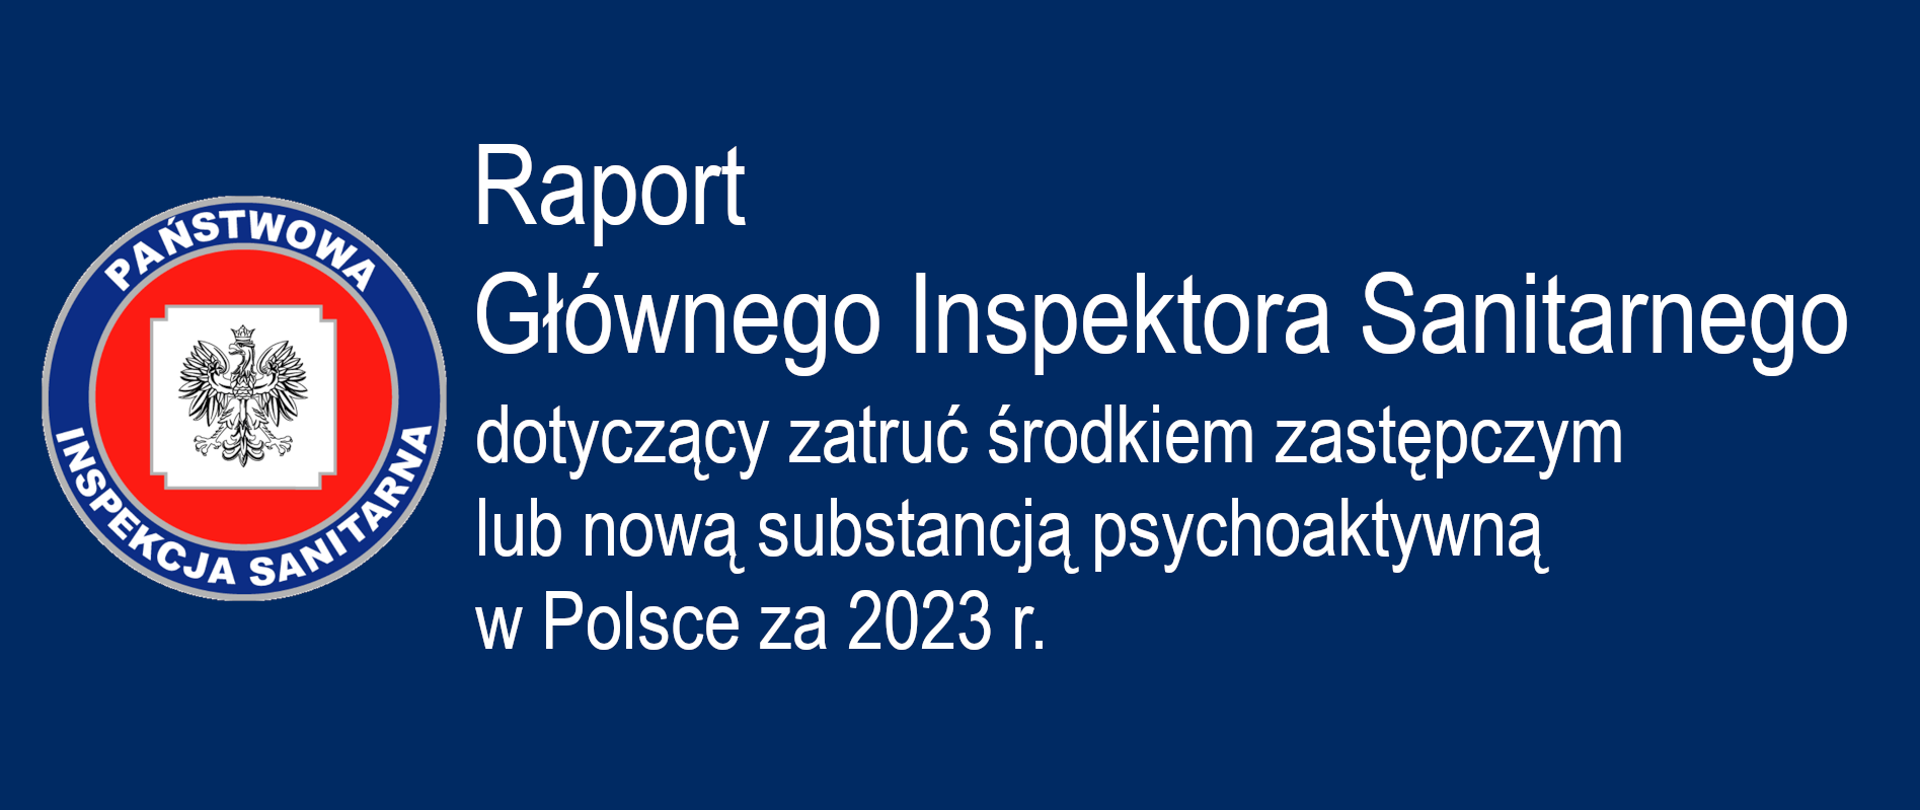 Tekst raport Głównego Inspektora Sanitarnego dotyczący zatruć środkiem zastępczym lub nową substancją psychoaktywną w Polsce za 2023 r.